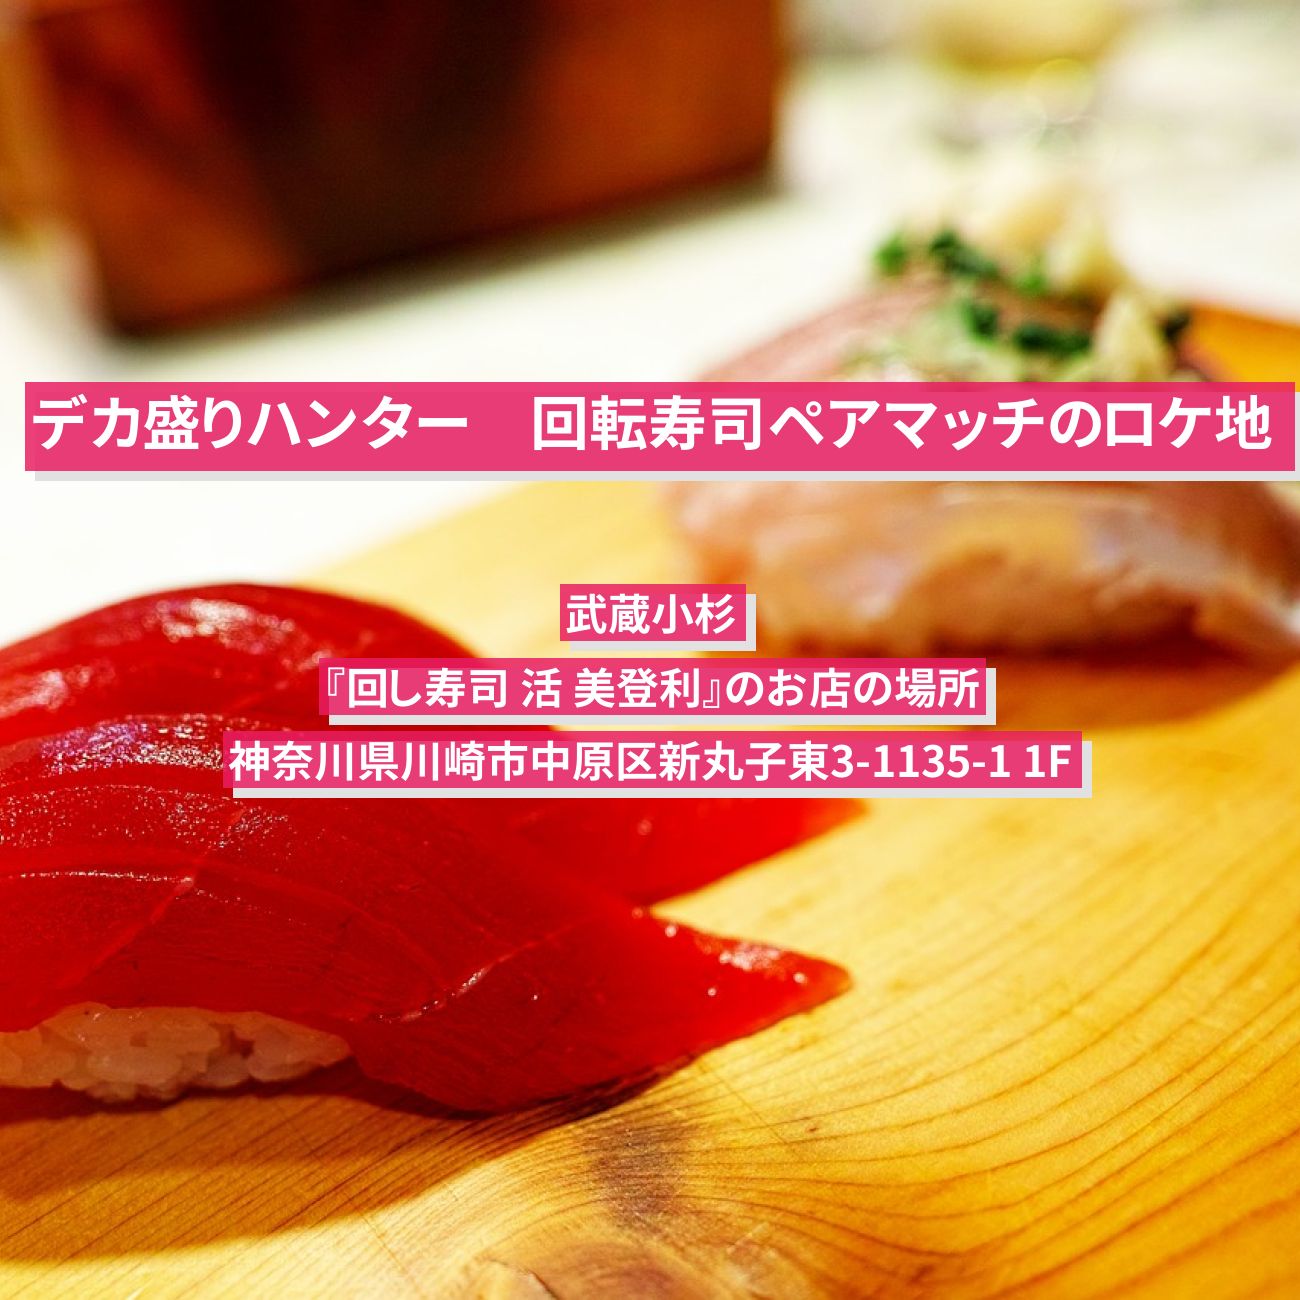 【デカ盛りハンター】回転寿司ペアマッチのロケ地　武蔵小杉『回し寿司 活 美登利』のお店の場所